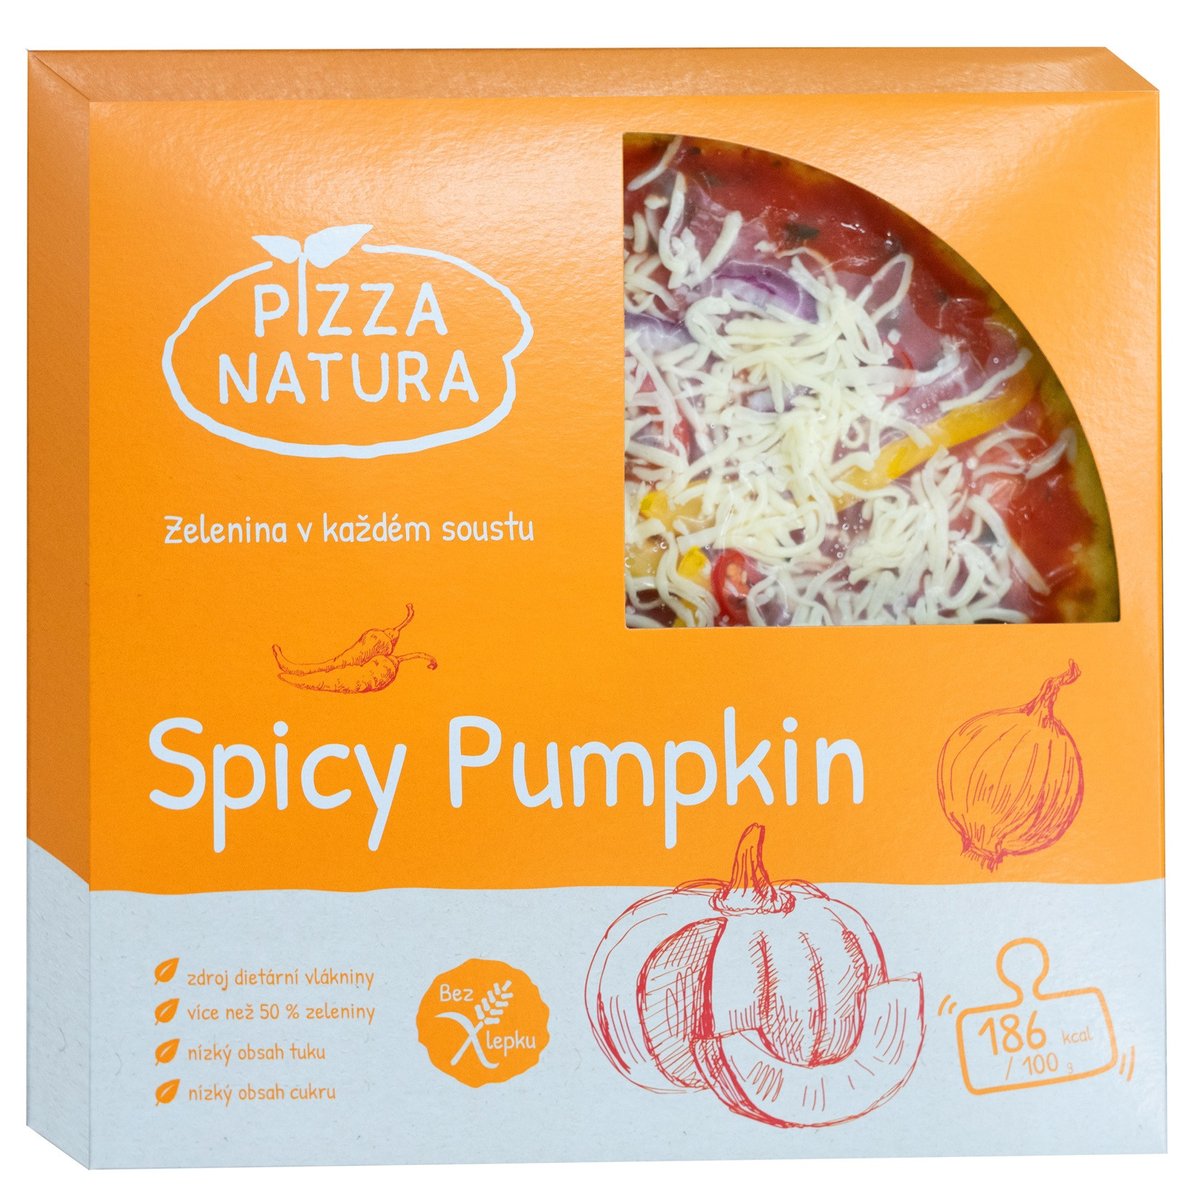 Pizza Natura Spicy Pumpkin pizza z originálního zeleninového těsta